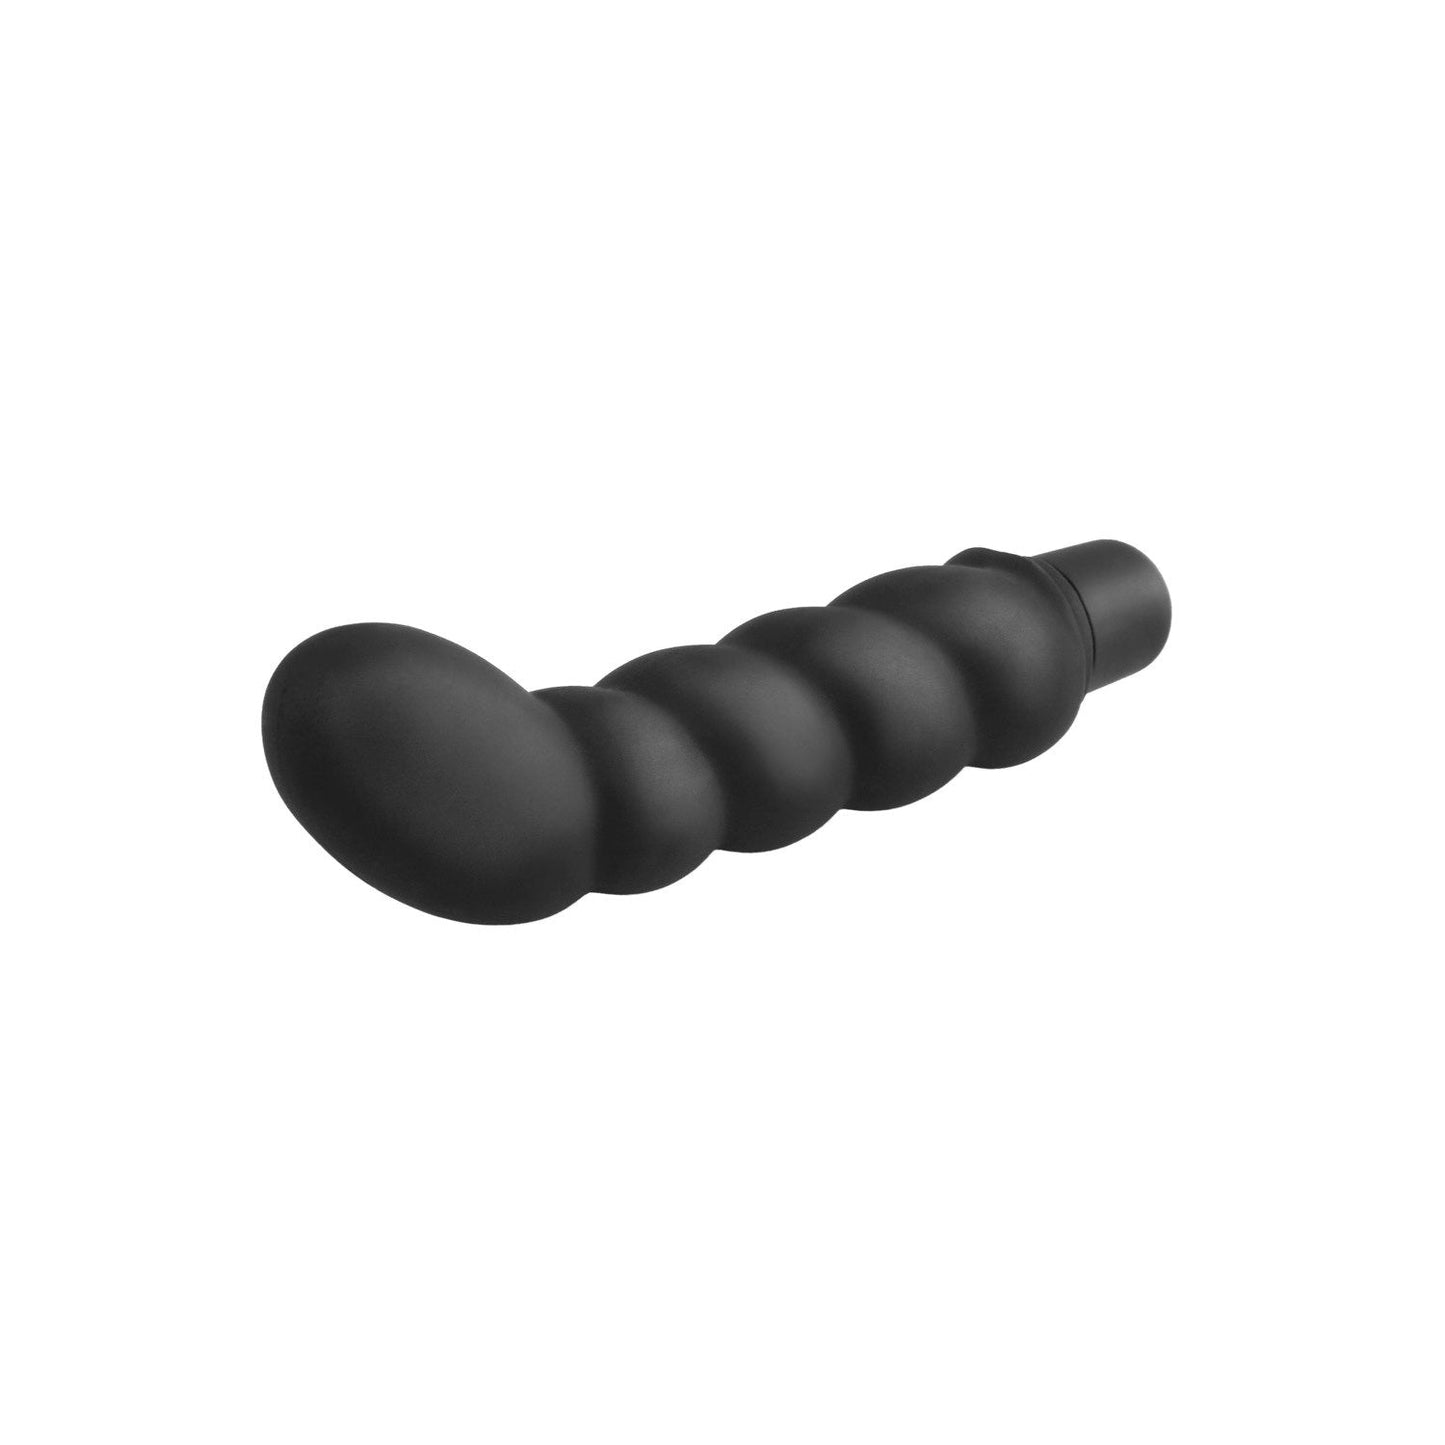 Ribbed P-spot Vibe - Black 10 cm (4") Prostate Vibrator